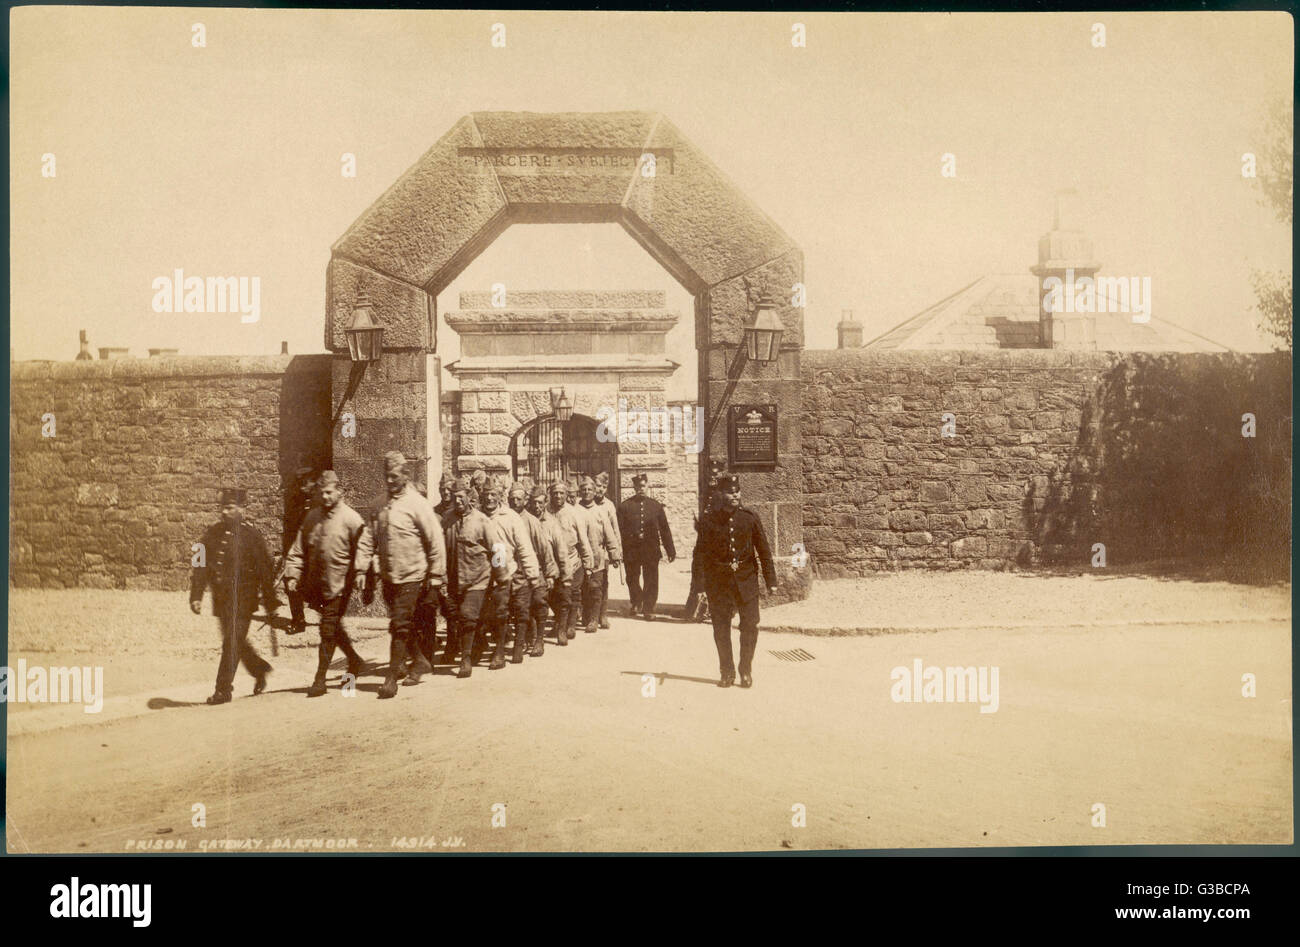 Gefangene von Dartmoor gehen auf die Mauren arbeiten. 1806-9, französische Gefangene während der napoleonischen Kriege Haus wurde Dartmoor in Princetown, Devon, erbaut.     Datum: 1907 Stockfoto